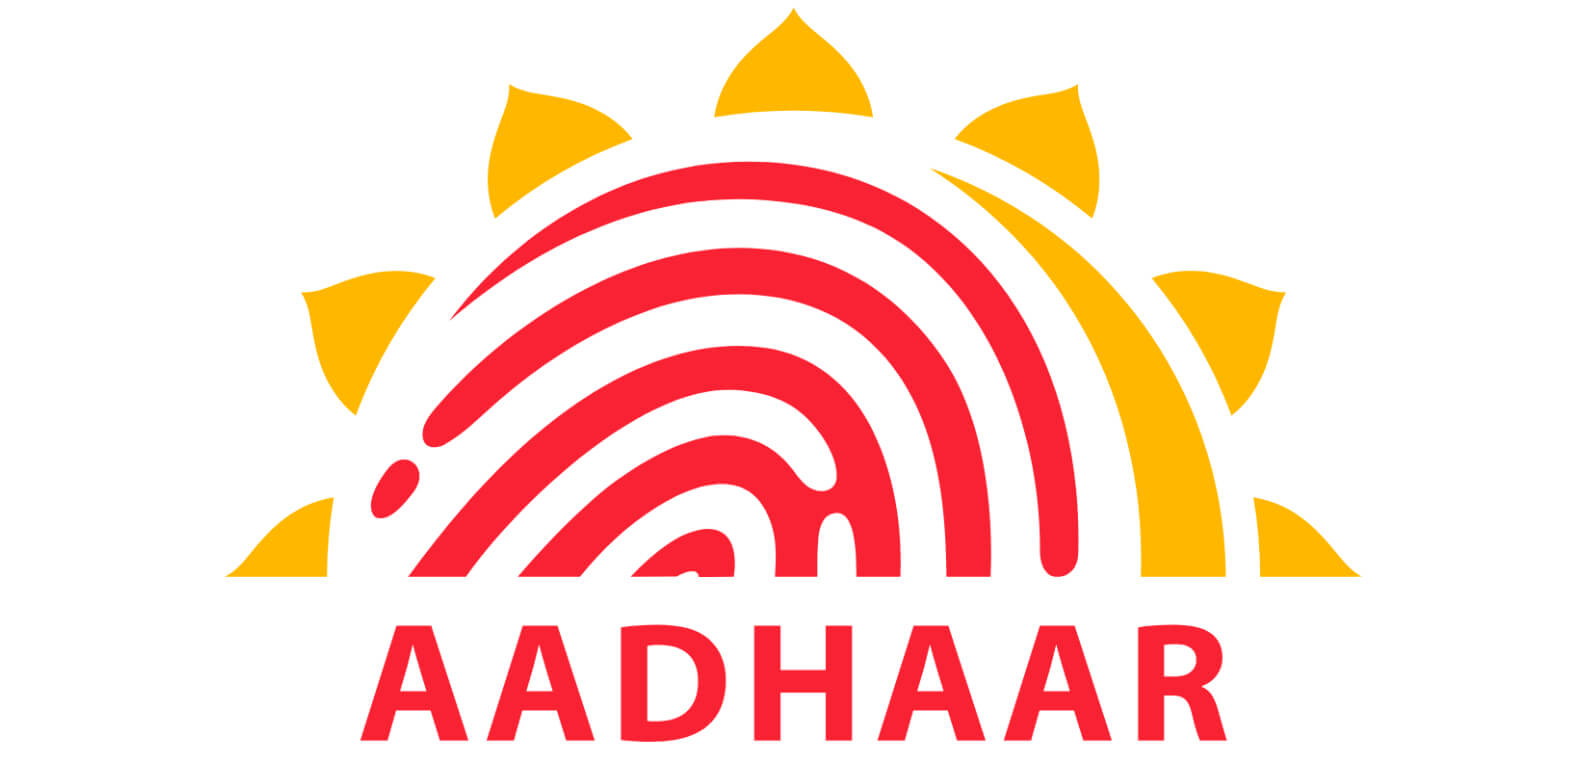 aadhaar data breach